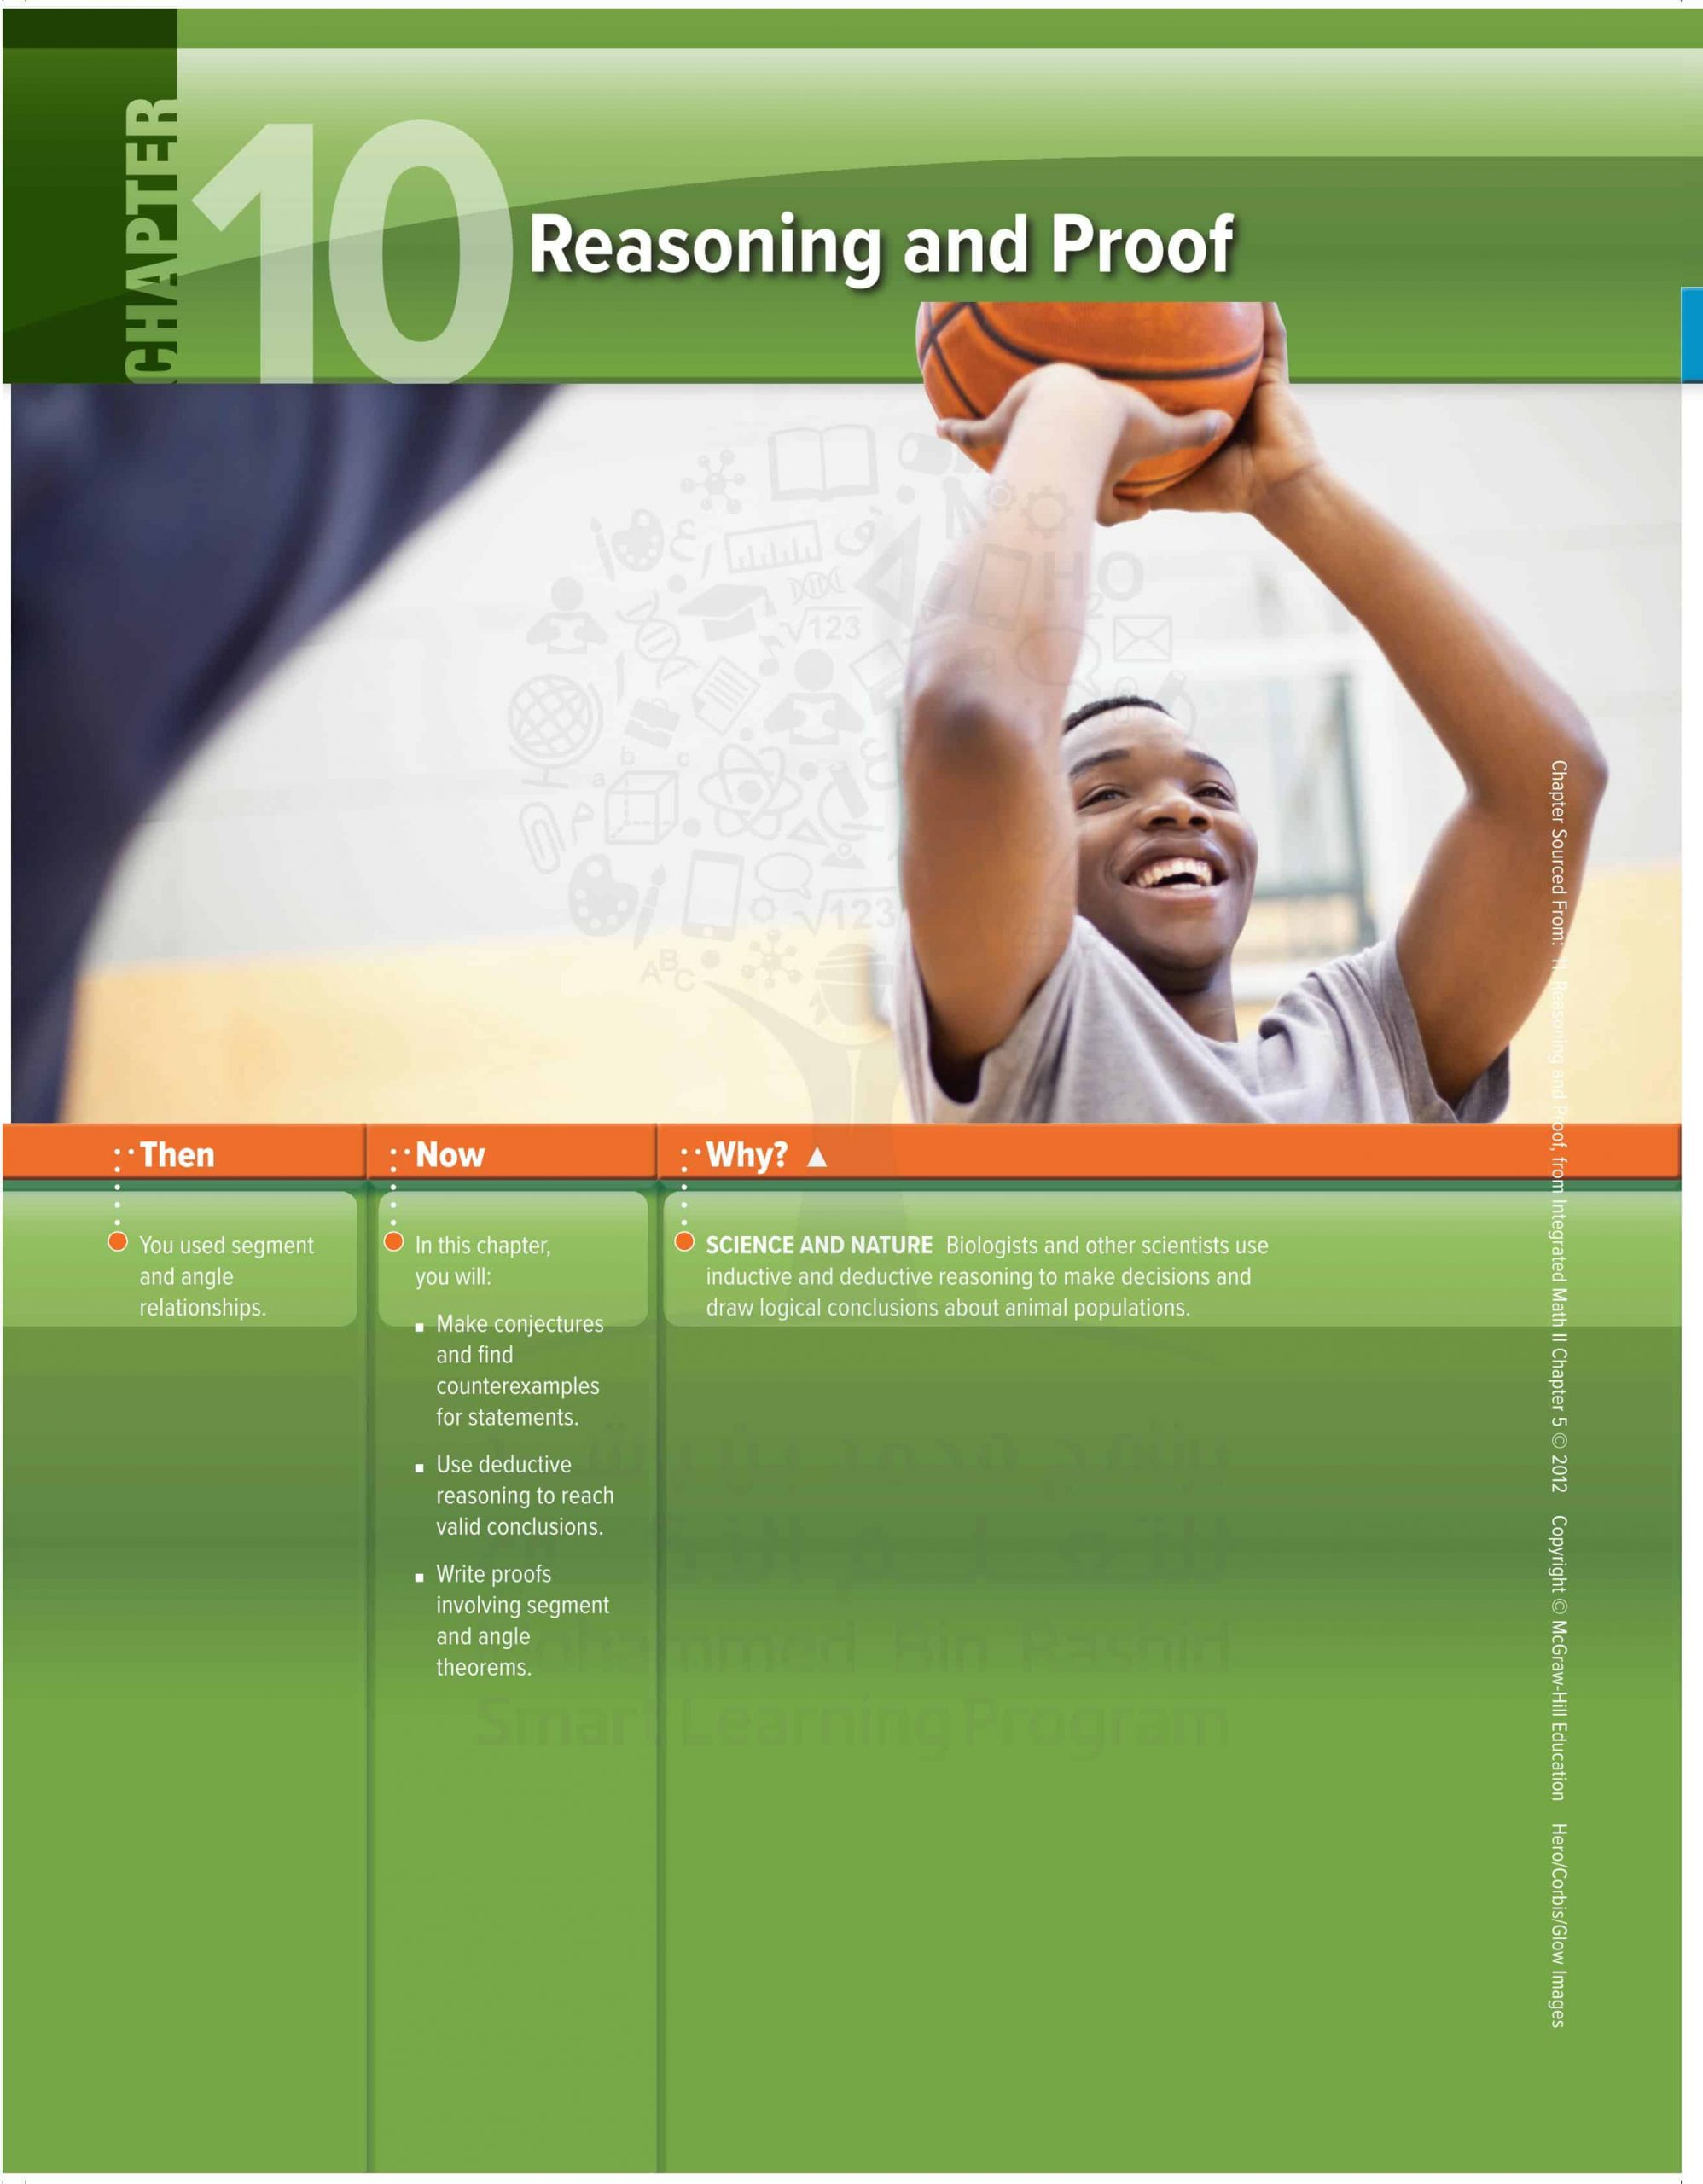 كتاب الطالب وحدة Reasoning of Proof بالإنجليزي الفصل الدراسي الثالث 2020-2021 الصف التاسع مادة الرياضيات المتكاملة 